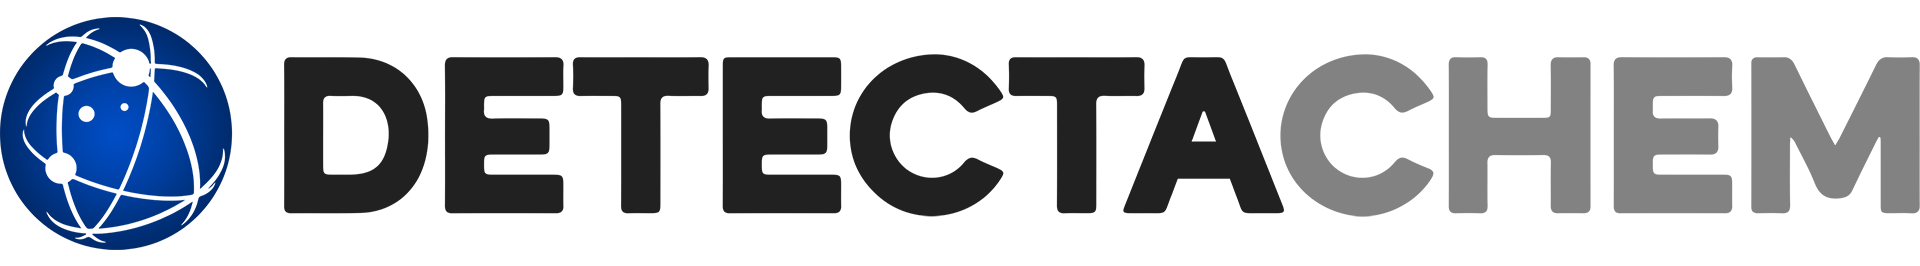 DetectaChem-Primary-Logo-2022-1080p